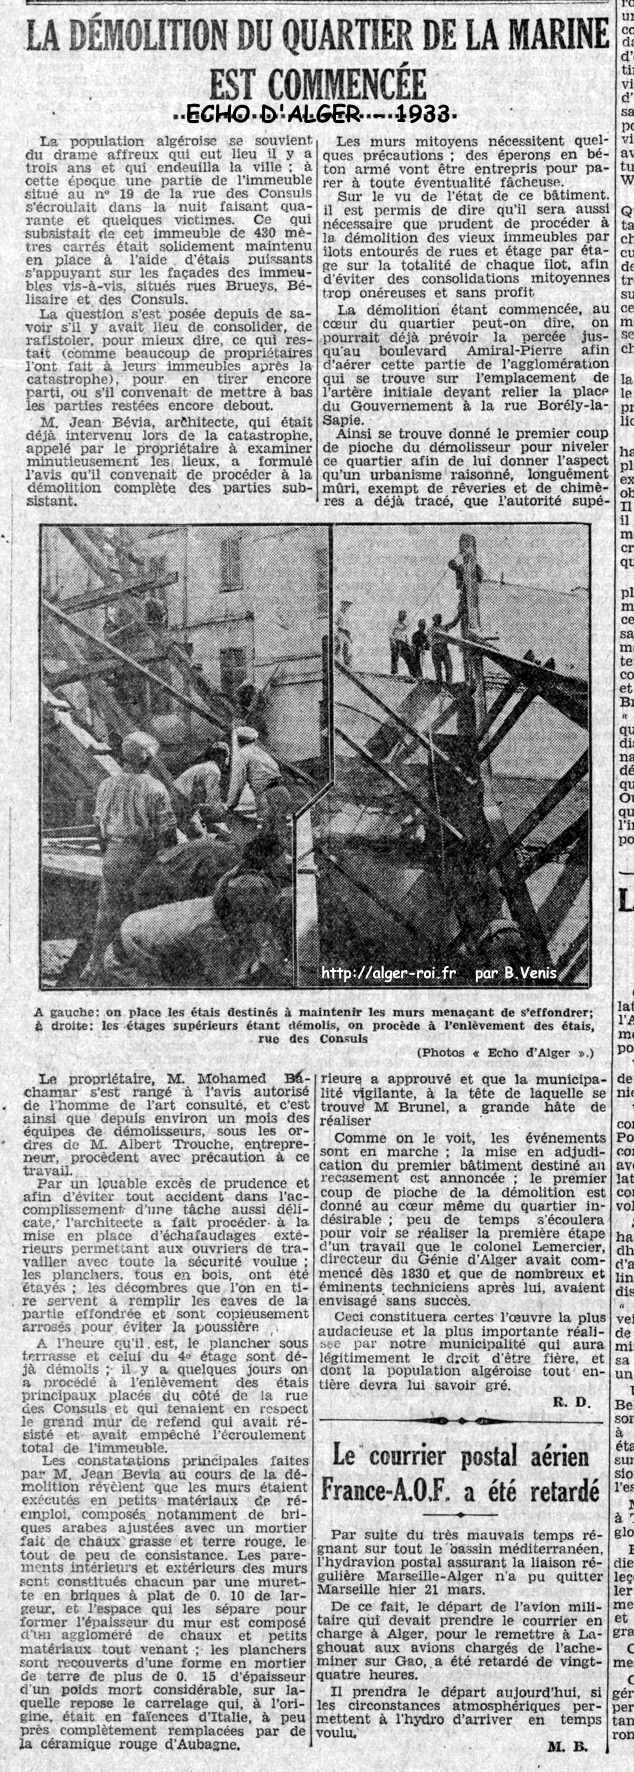 demolition du quartier de la marine est commencee,1933